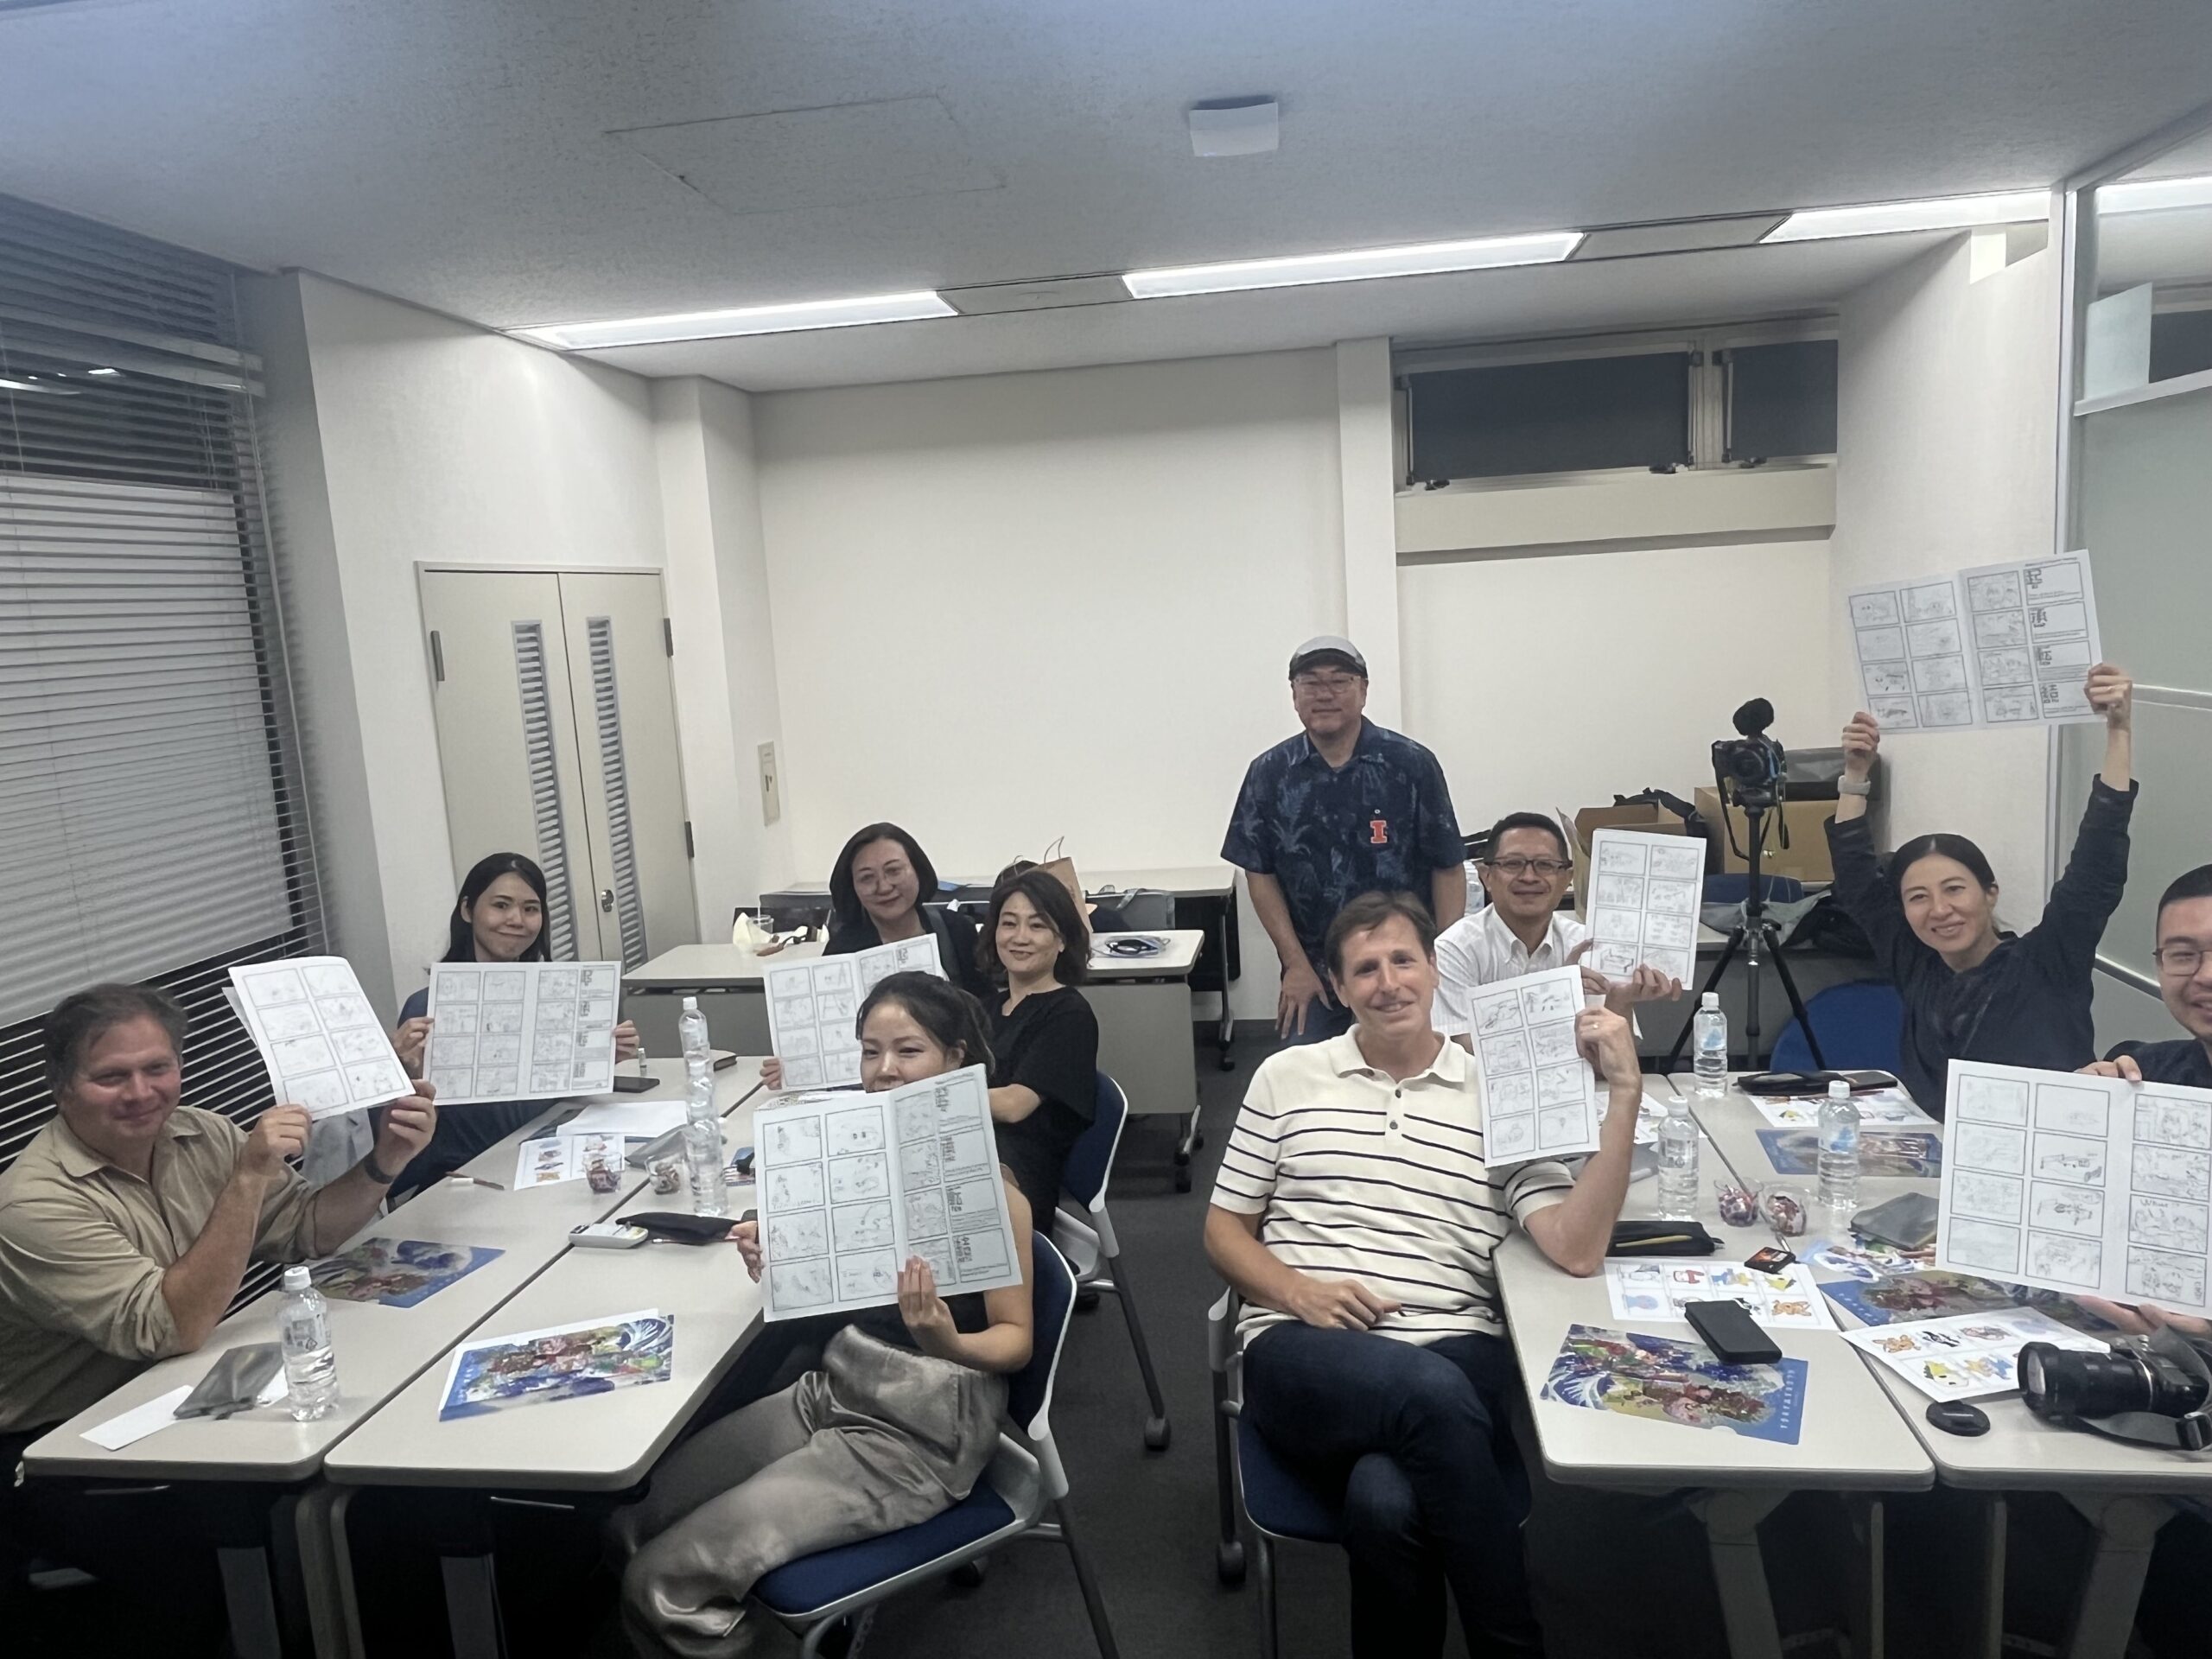 チームビルディング研修に新風を！日本のポップカルチャー「マンガ」を活用したユニークなプログラム